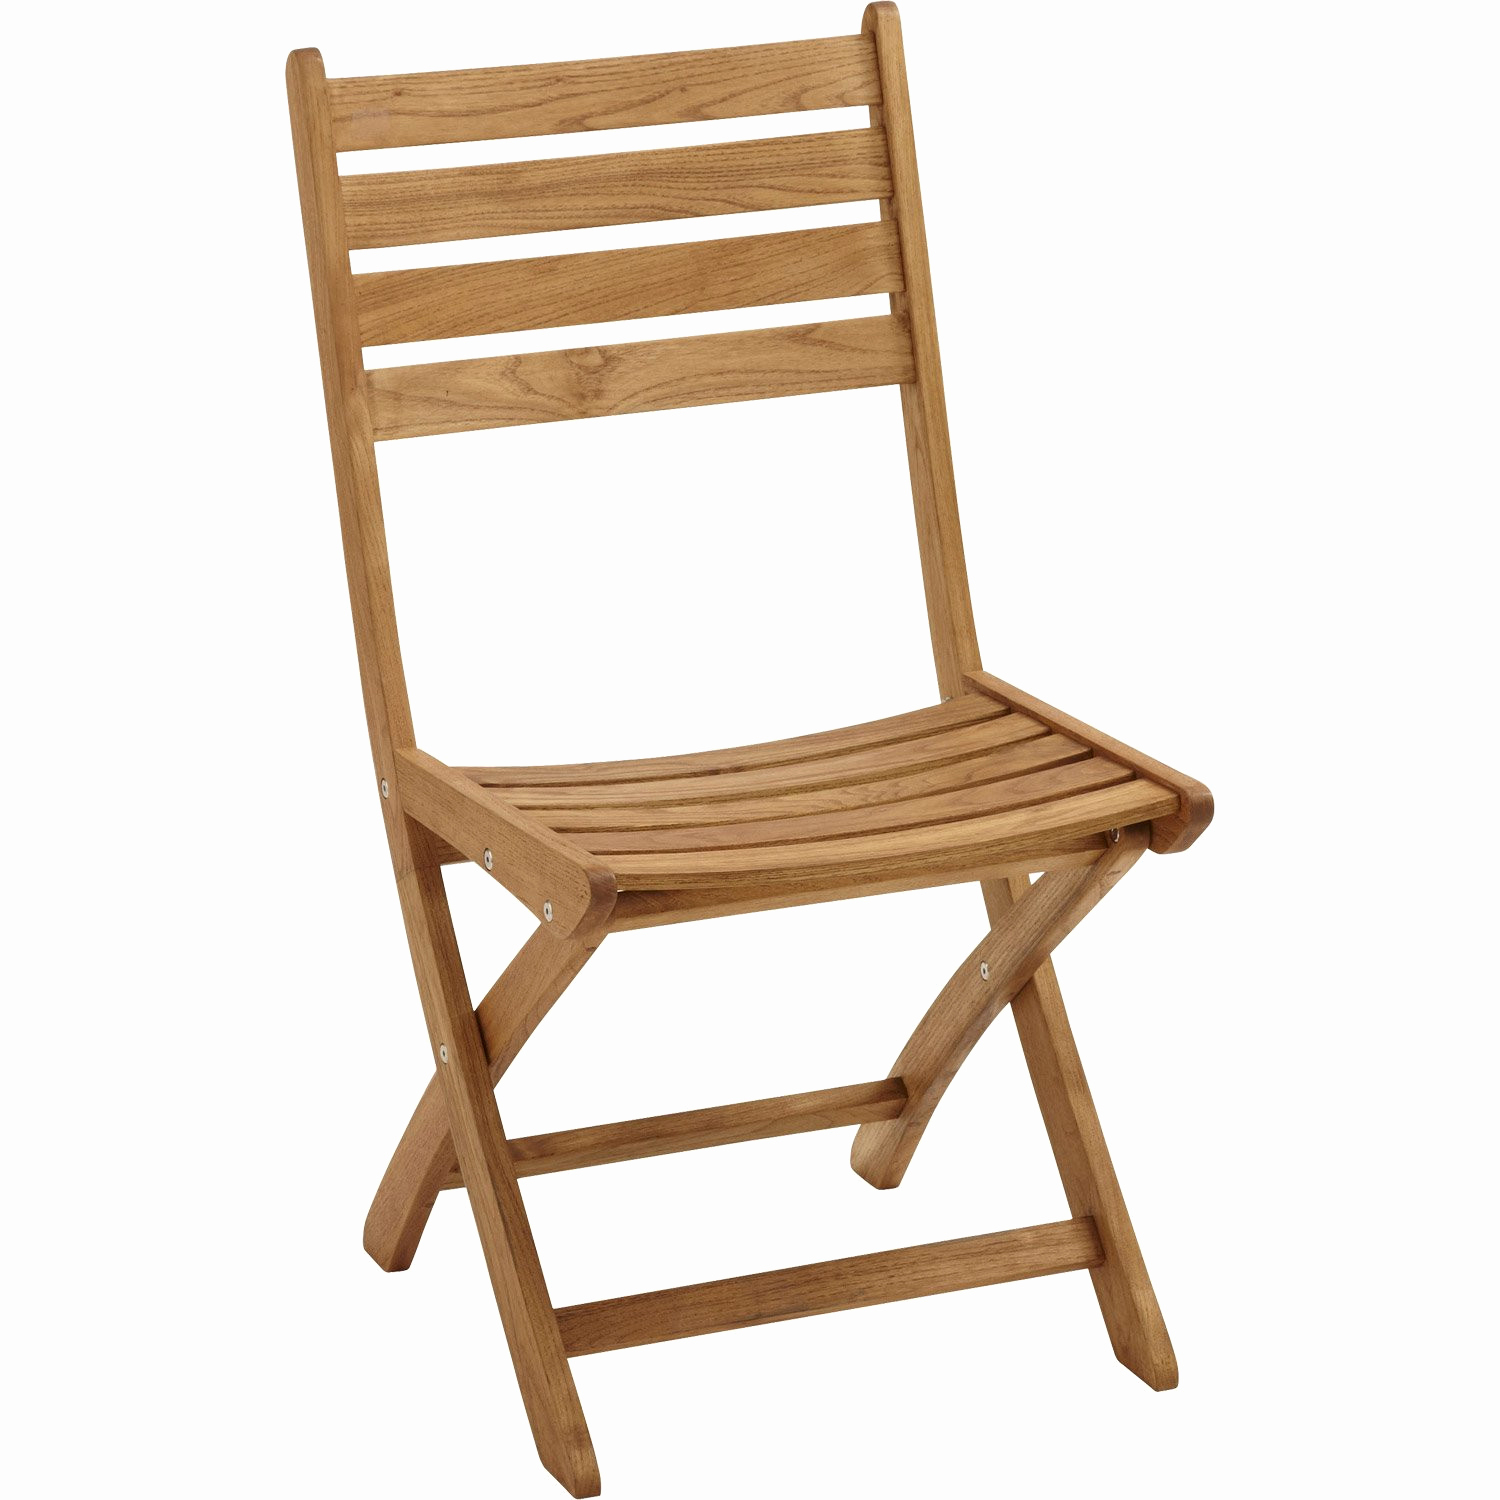 chaise longue leroy merlin beau lafuma fauteuil elegant destine a de jardin chaise longue leroy merlin beau jardin pliante promo of